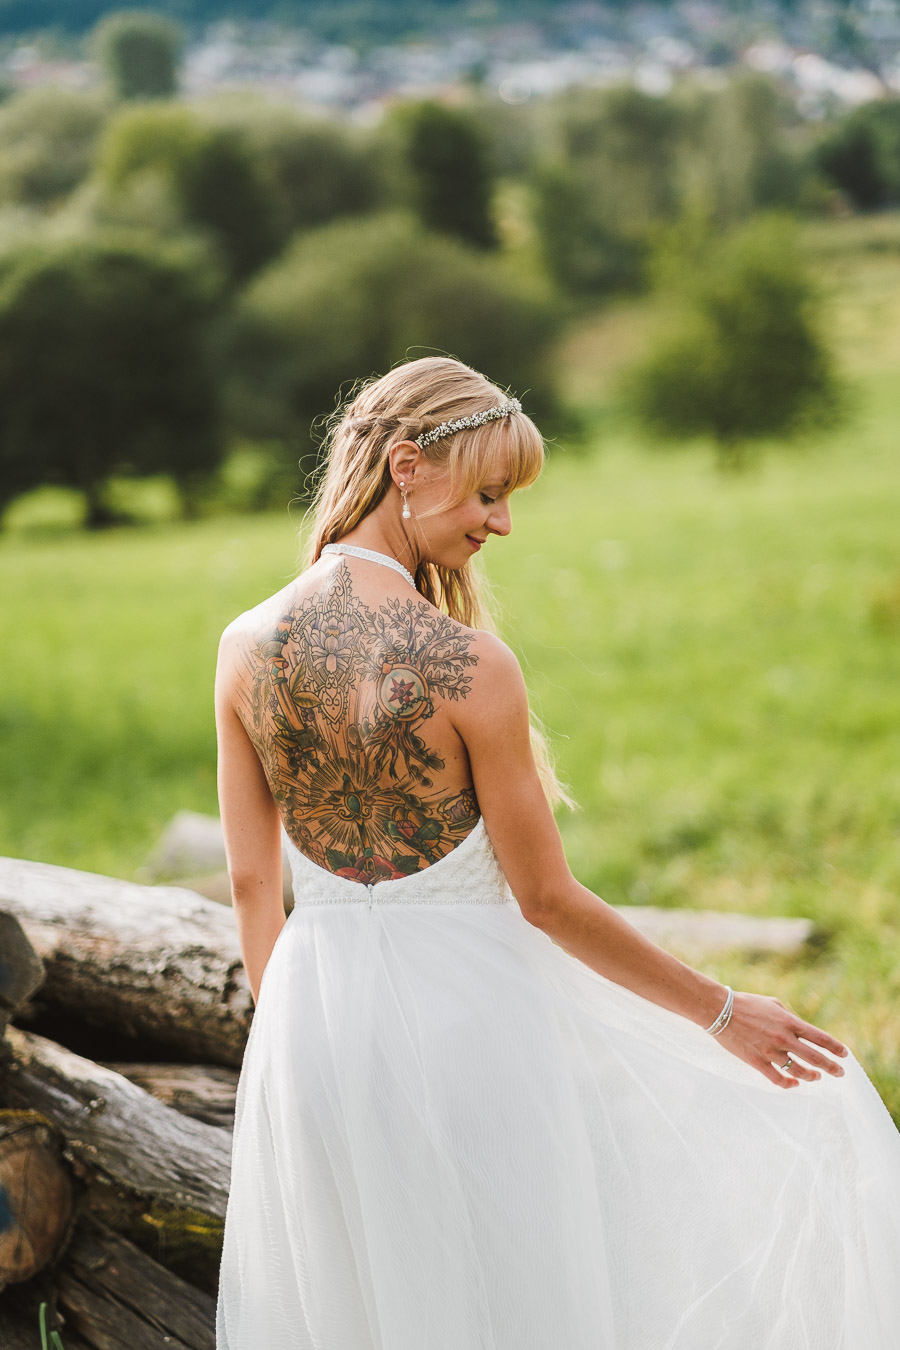 Wunderschöne Braut mit tollem Rückentattoo